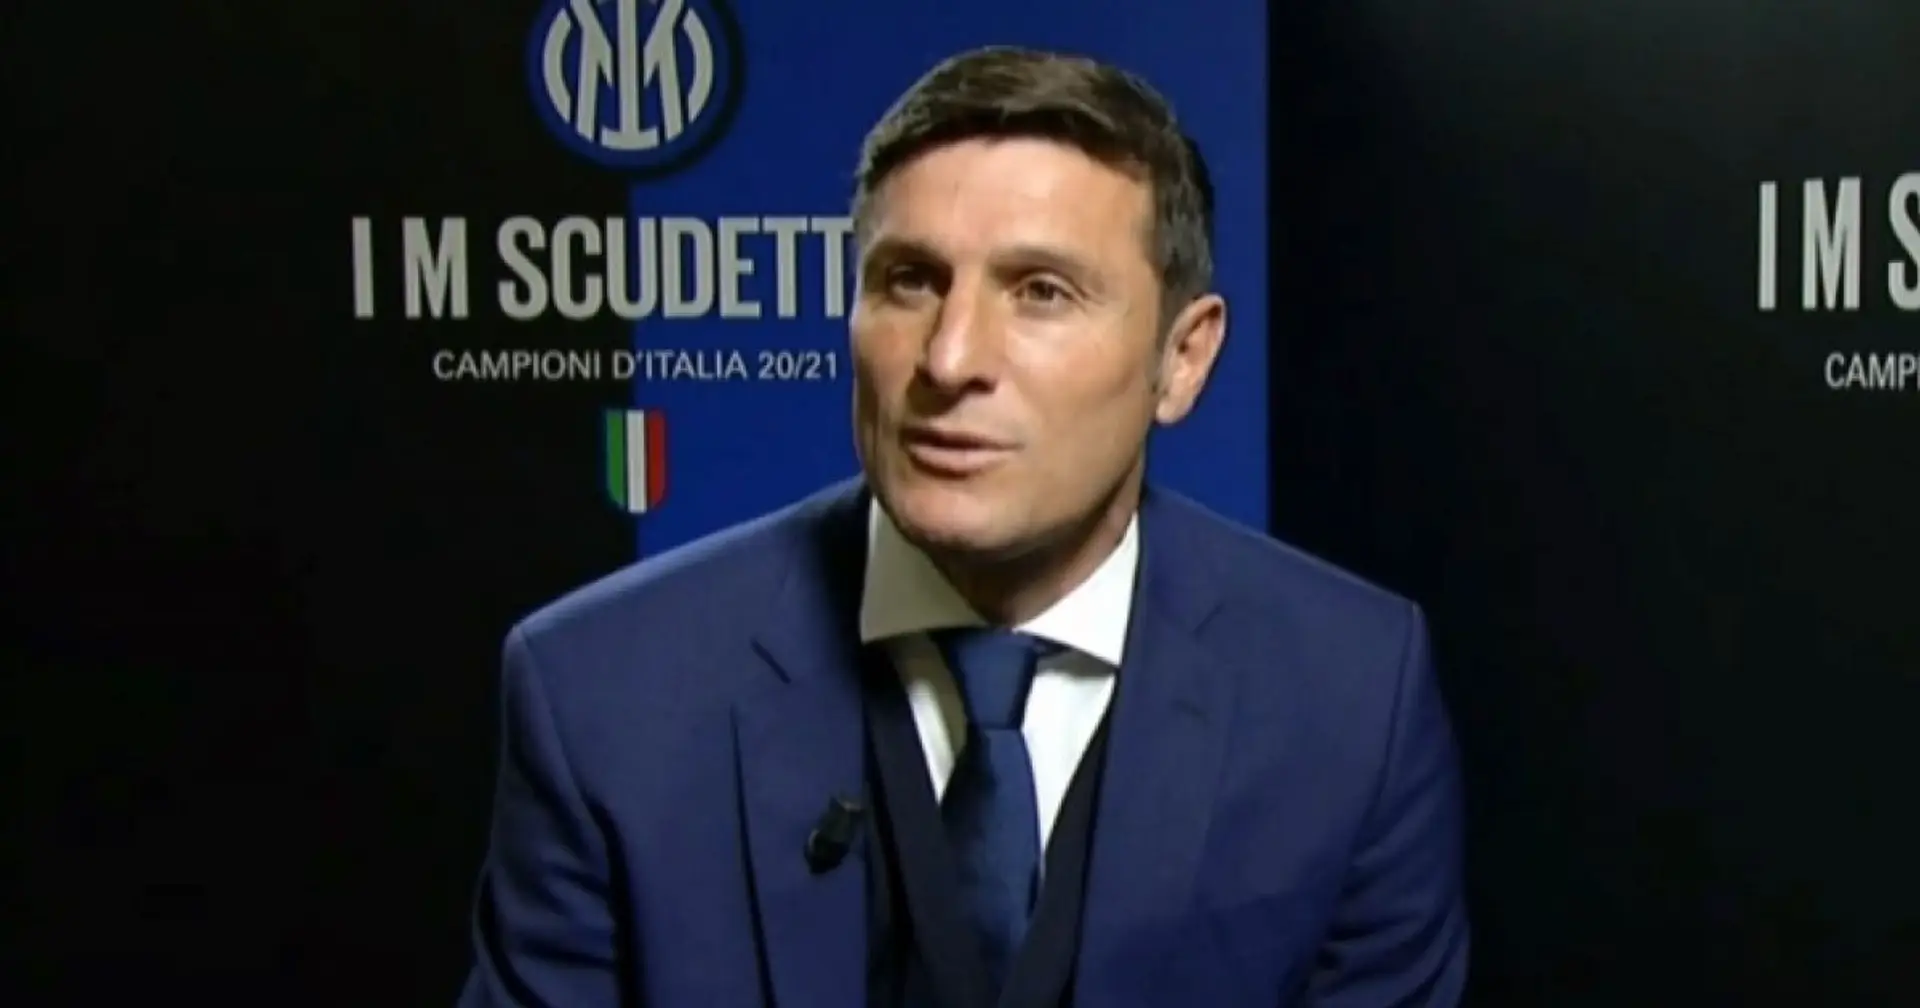 "La prestazione c'è stata", Zanetti commenta il pareggio nel derby di Milano e svela il motivo del calo fisico nel finale